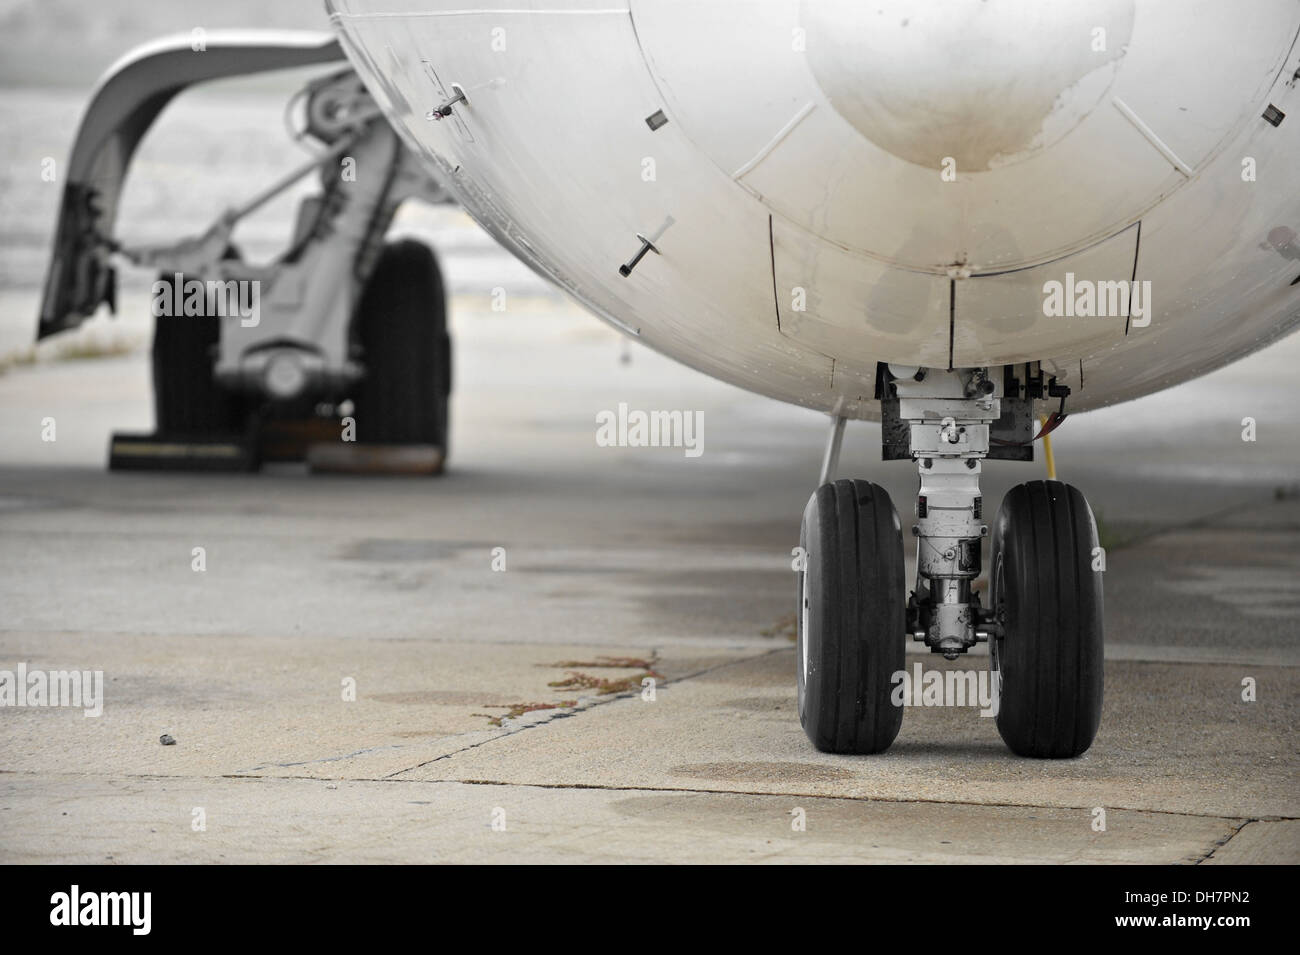 Vista frontale immagine con le ruote di un aeromobile in parcheggio Foto Stock